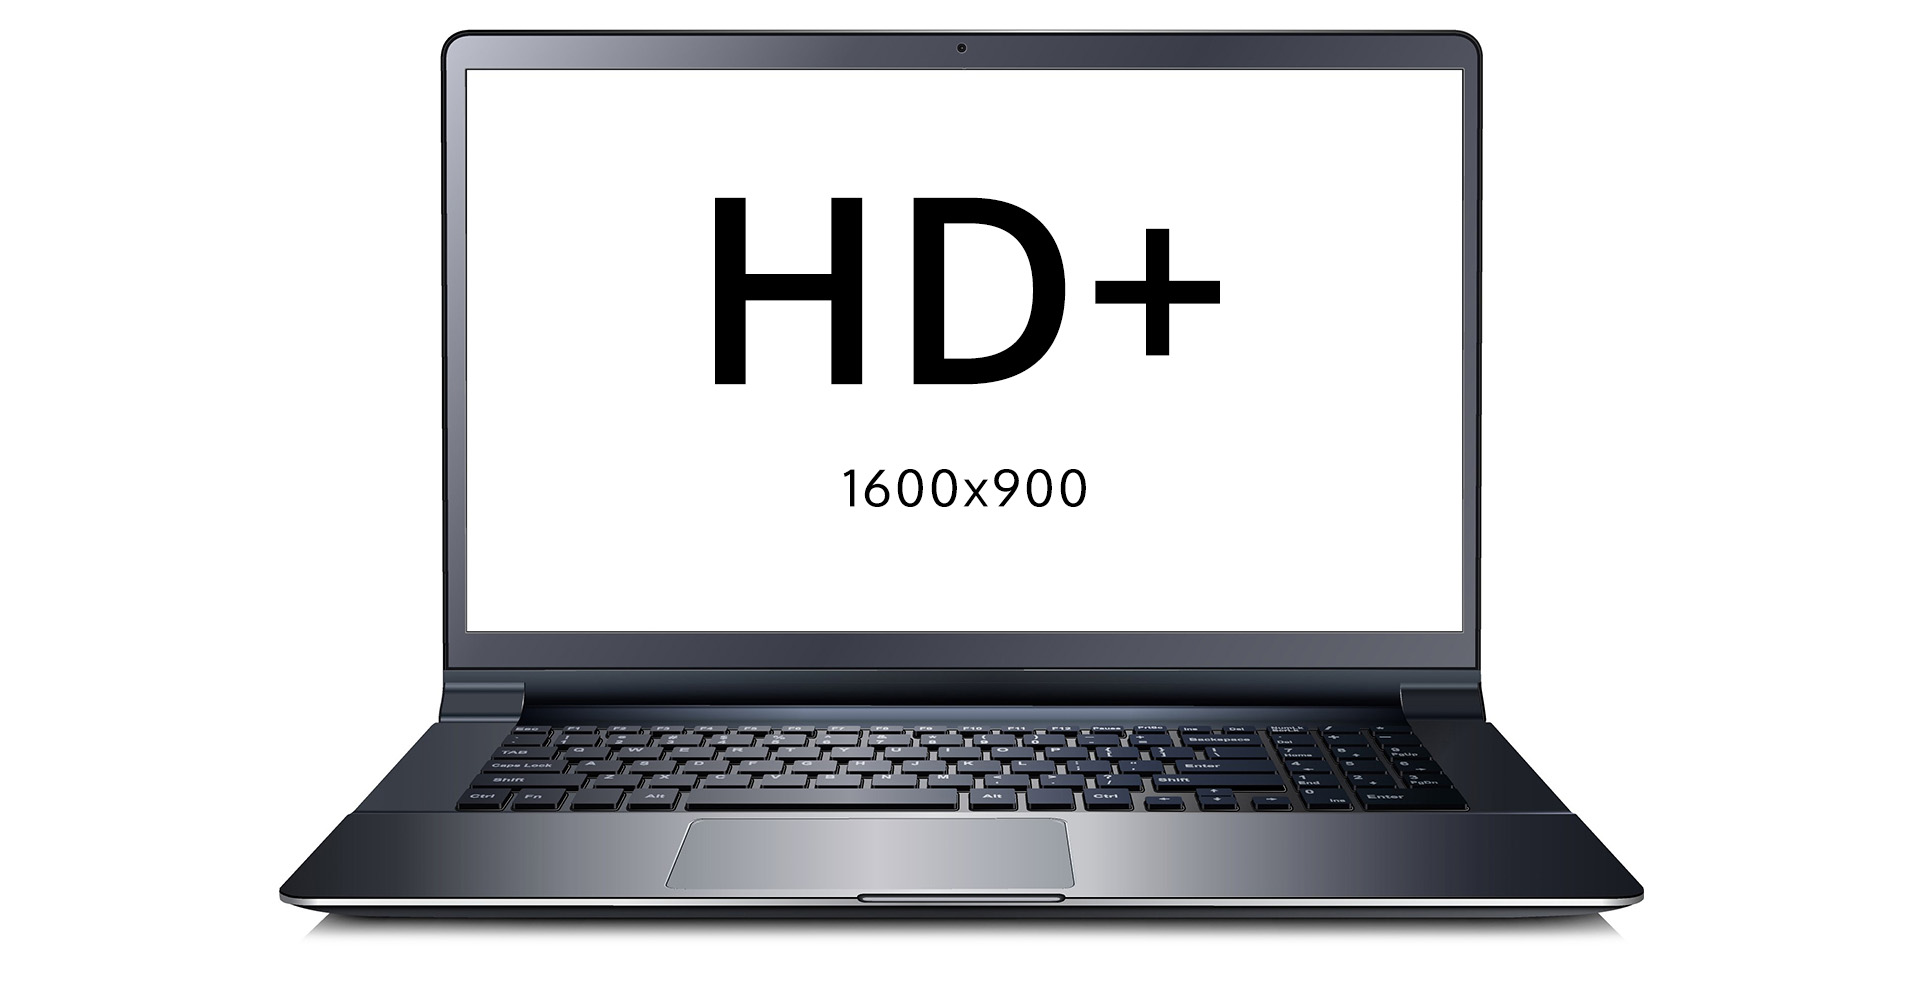 Nešiojamas kompiuteris Asus 90NB0TY2-M00K00 HD+ 1600x900 raiška